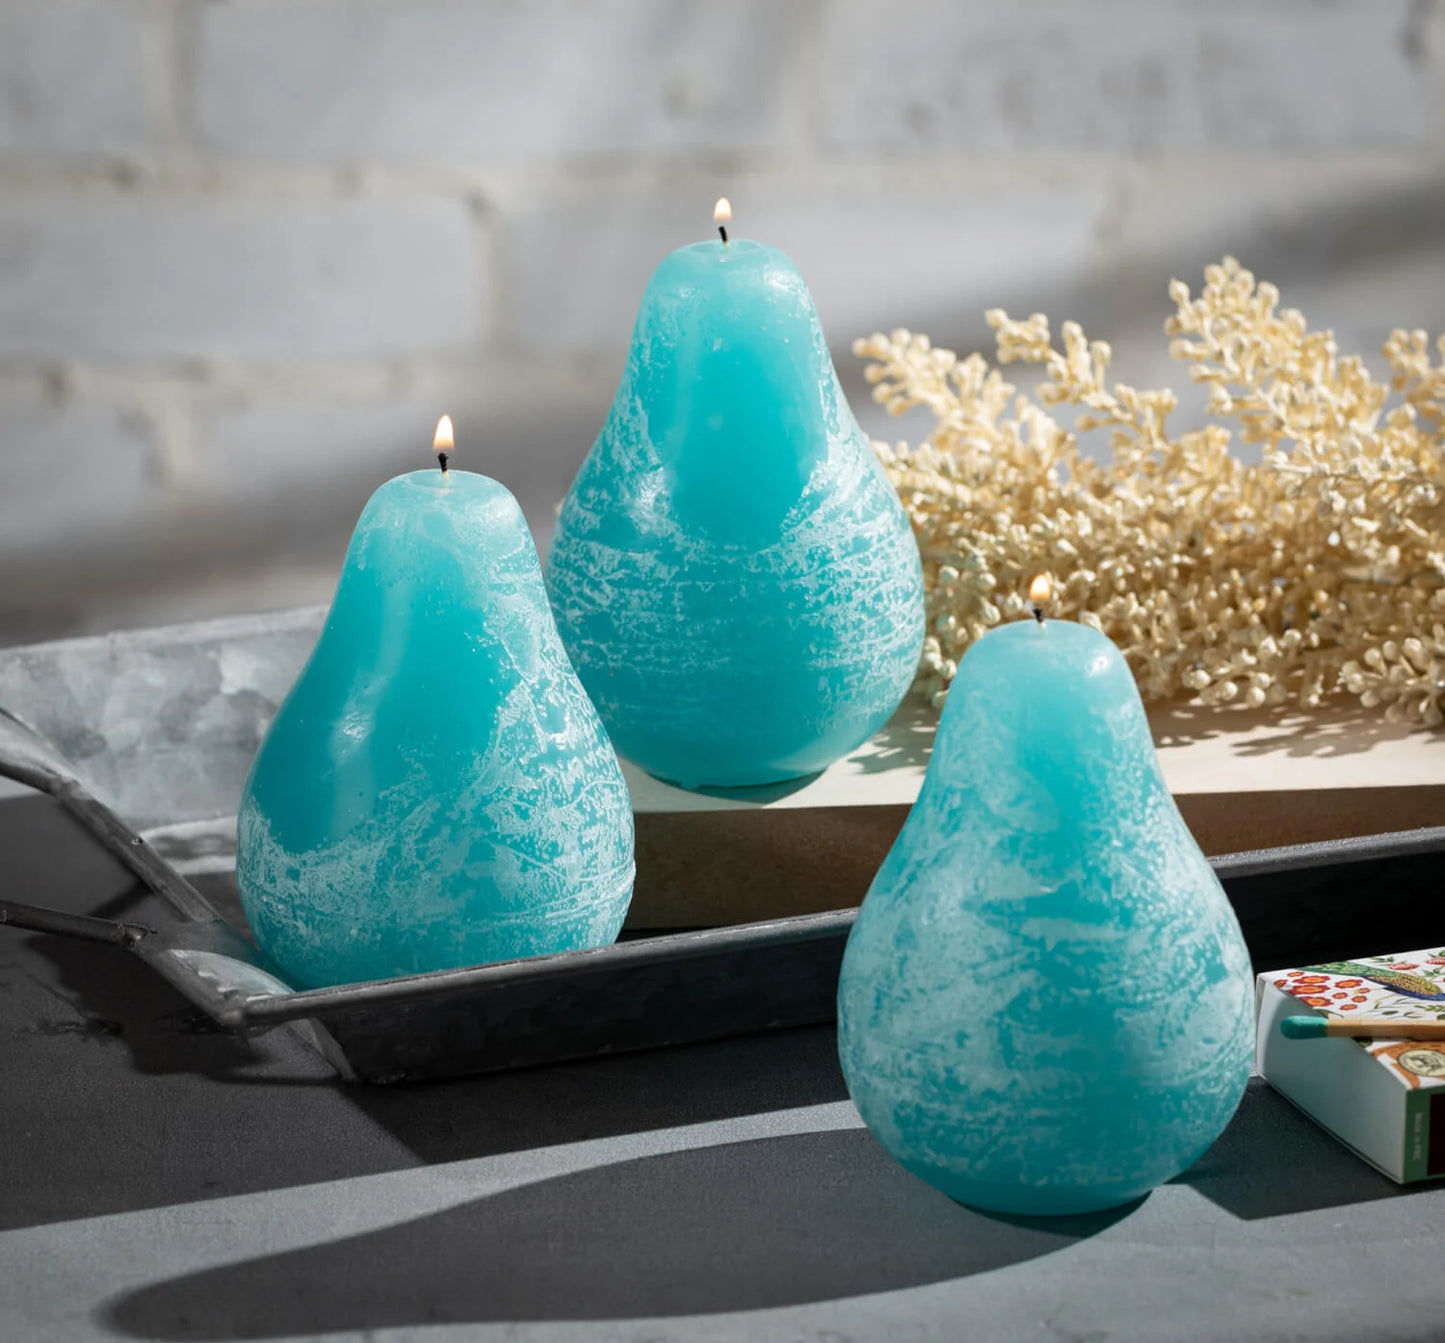 Pear Candle - Sea Glass